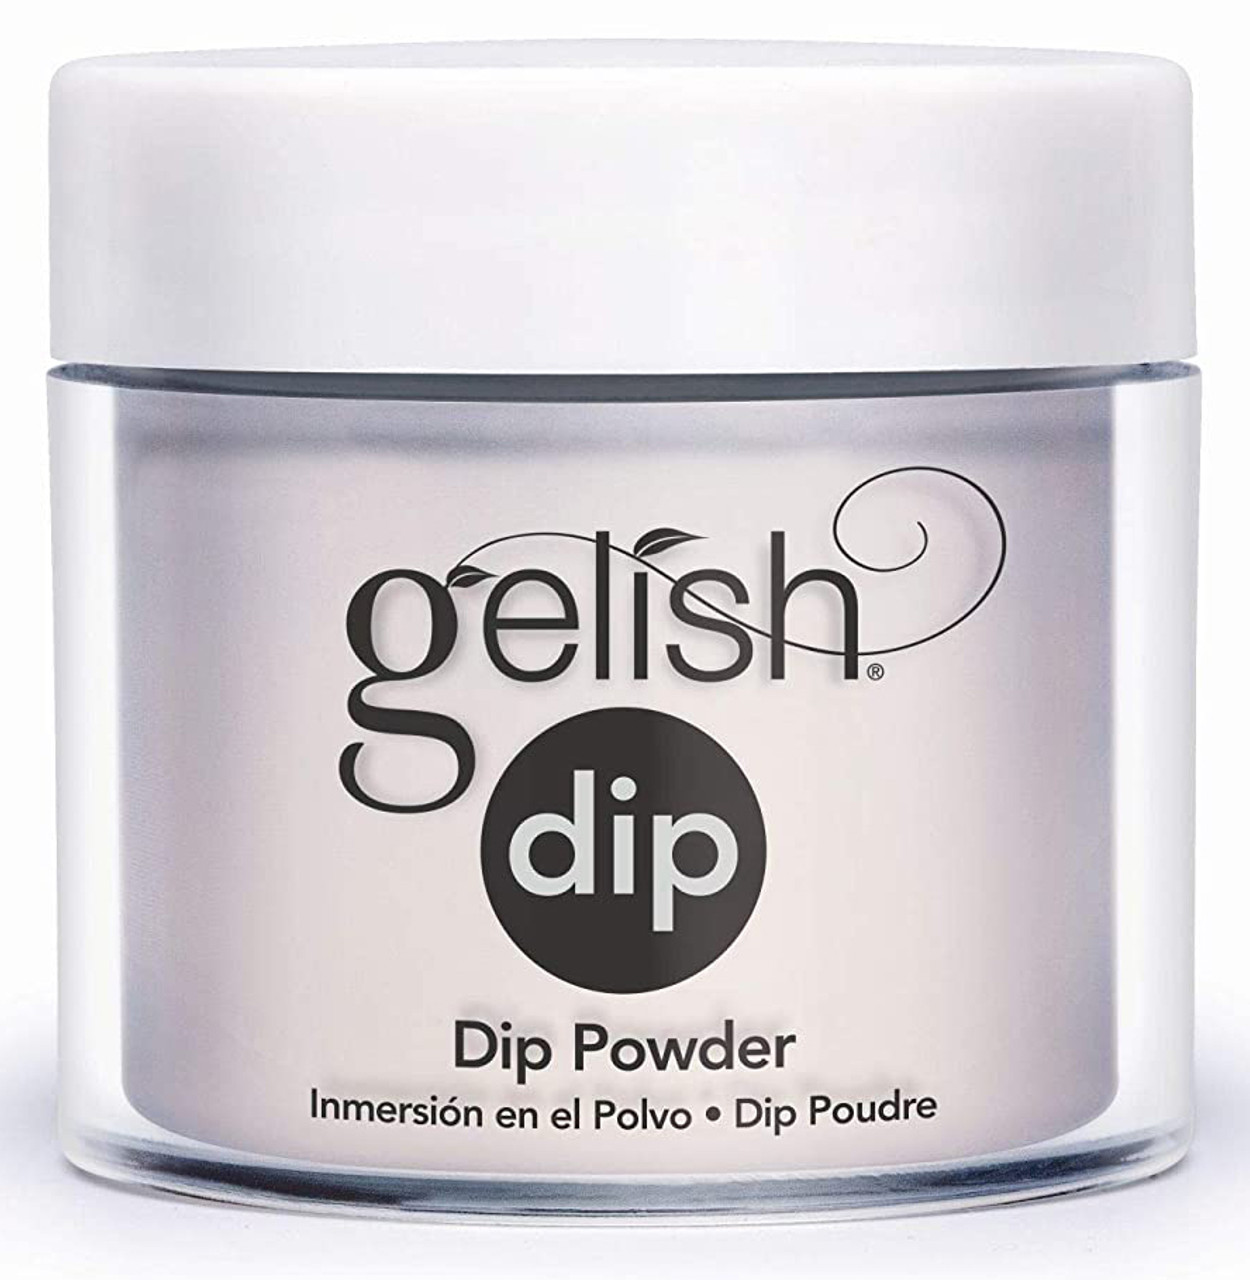 Gelish Dip Powder All American Beauty - 0.8 oz / 23 g